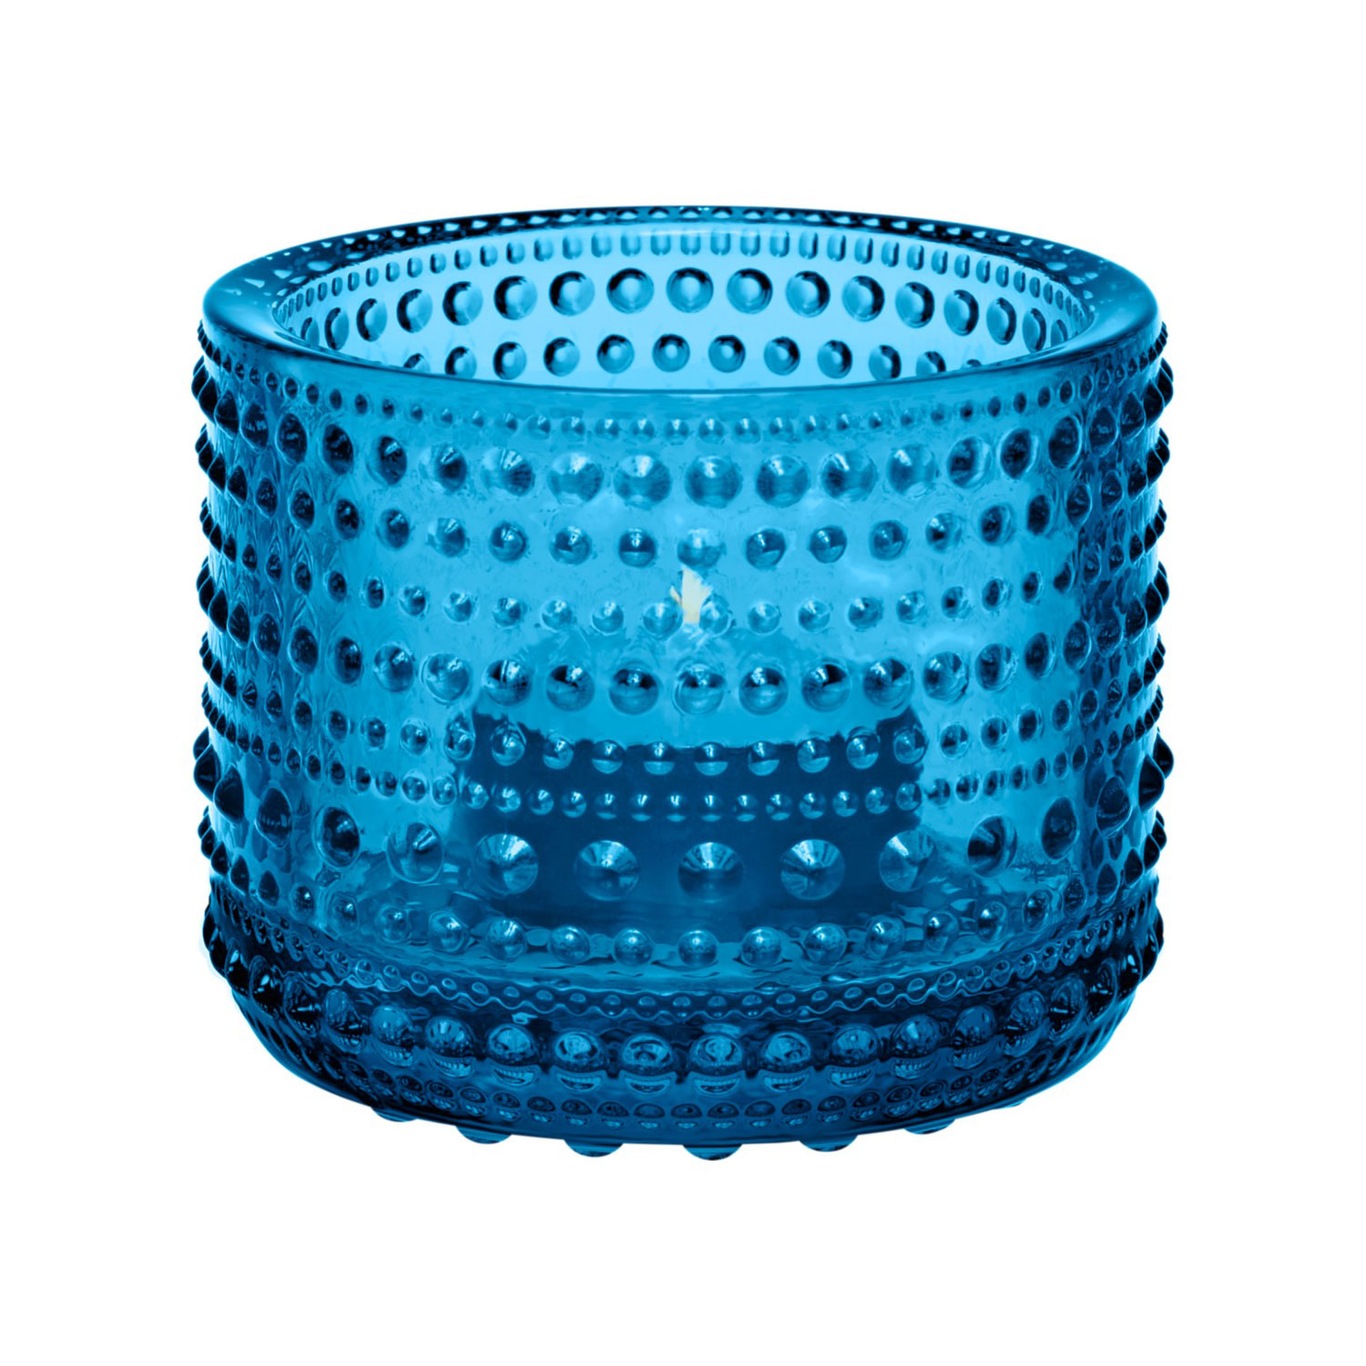 Kastehelmi Kaarshouder 6,4 cm, Turquoise